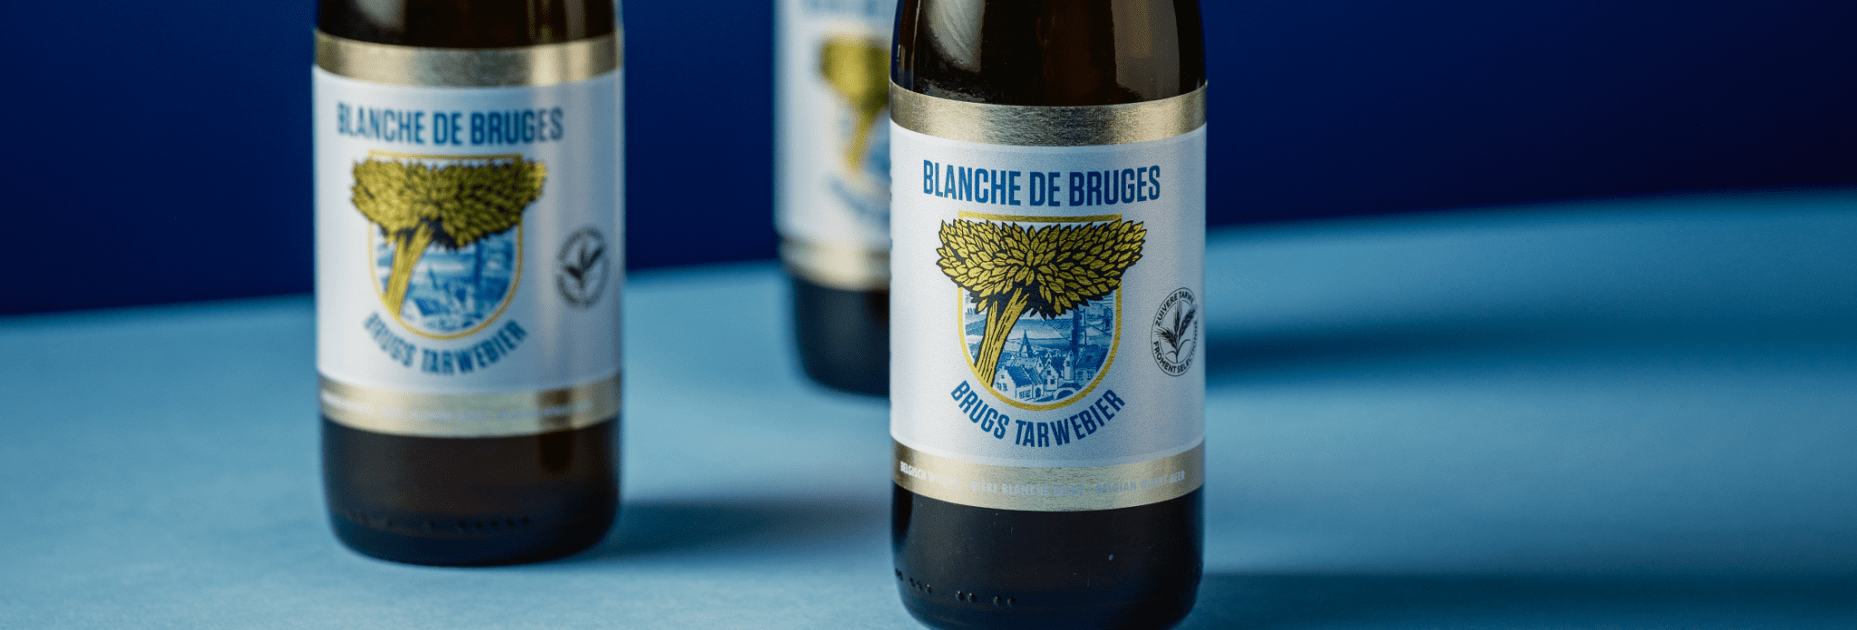 Blanche De Bruges Brugs Tarwebier label